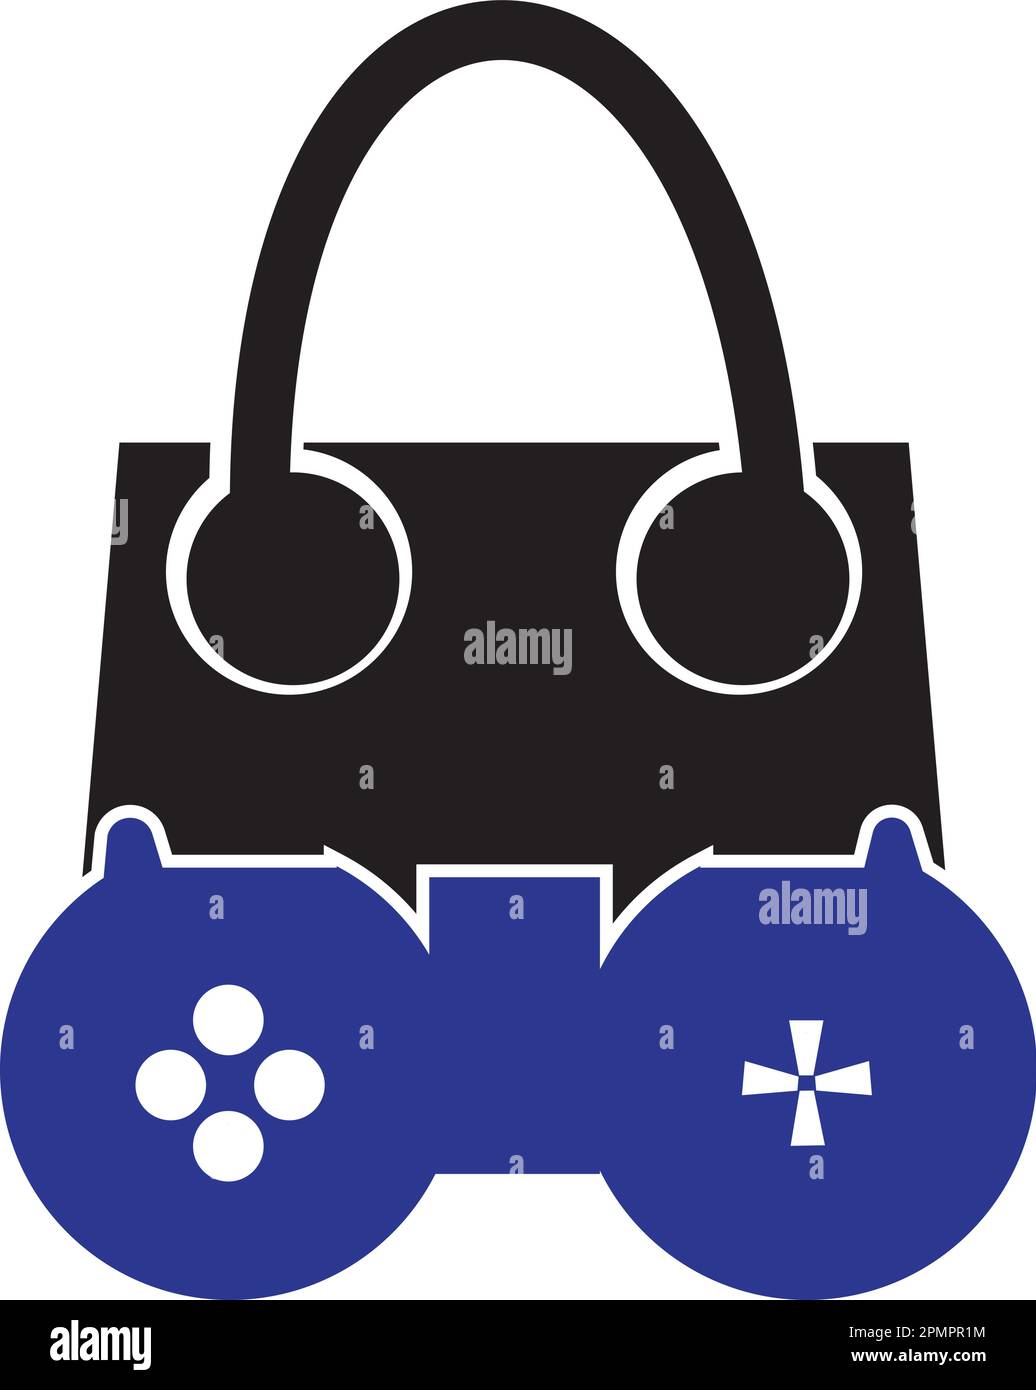 shopping bag game logo vector design template Stock Vector